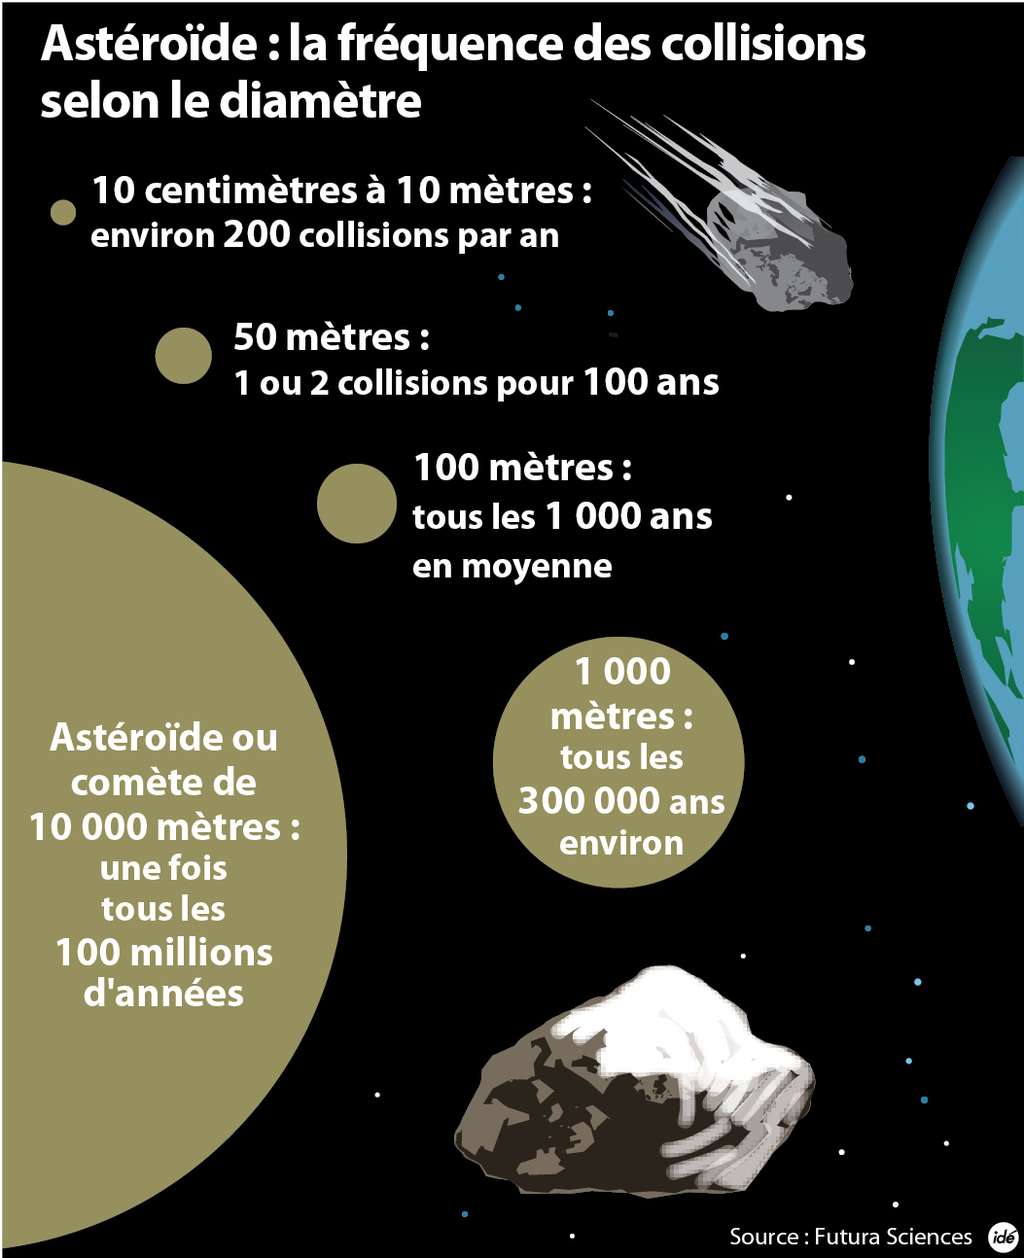 Le risque d’un impact catastrophique d'astéroïde avec la Terre est très faible mais les conséquences possibles seraient graves. © idé